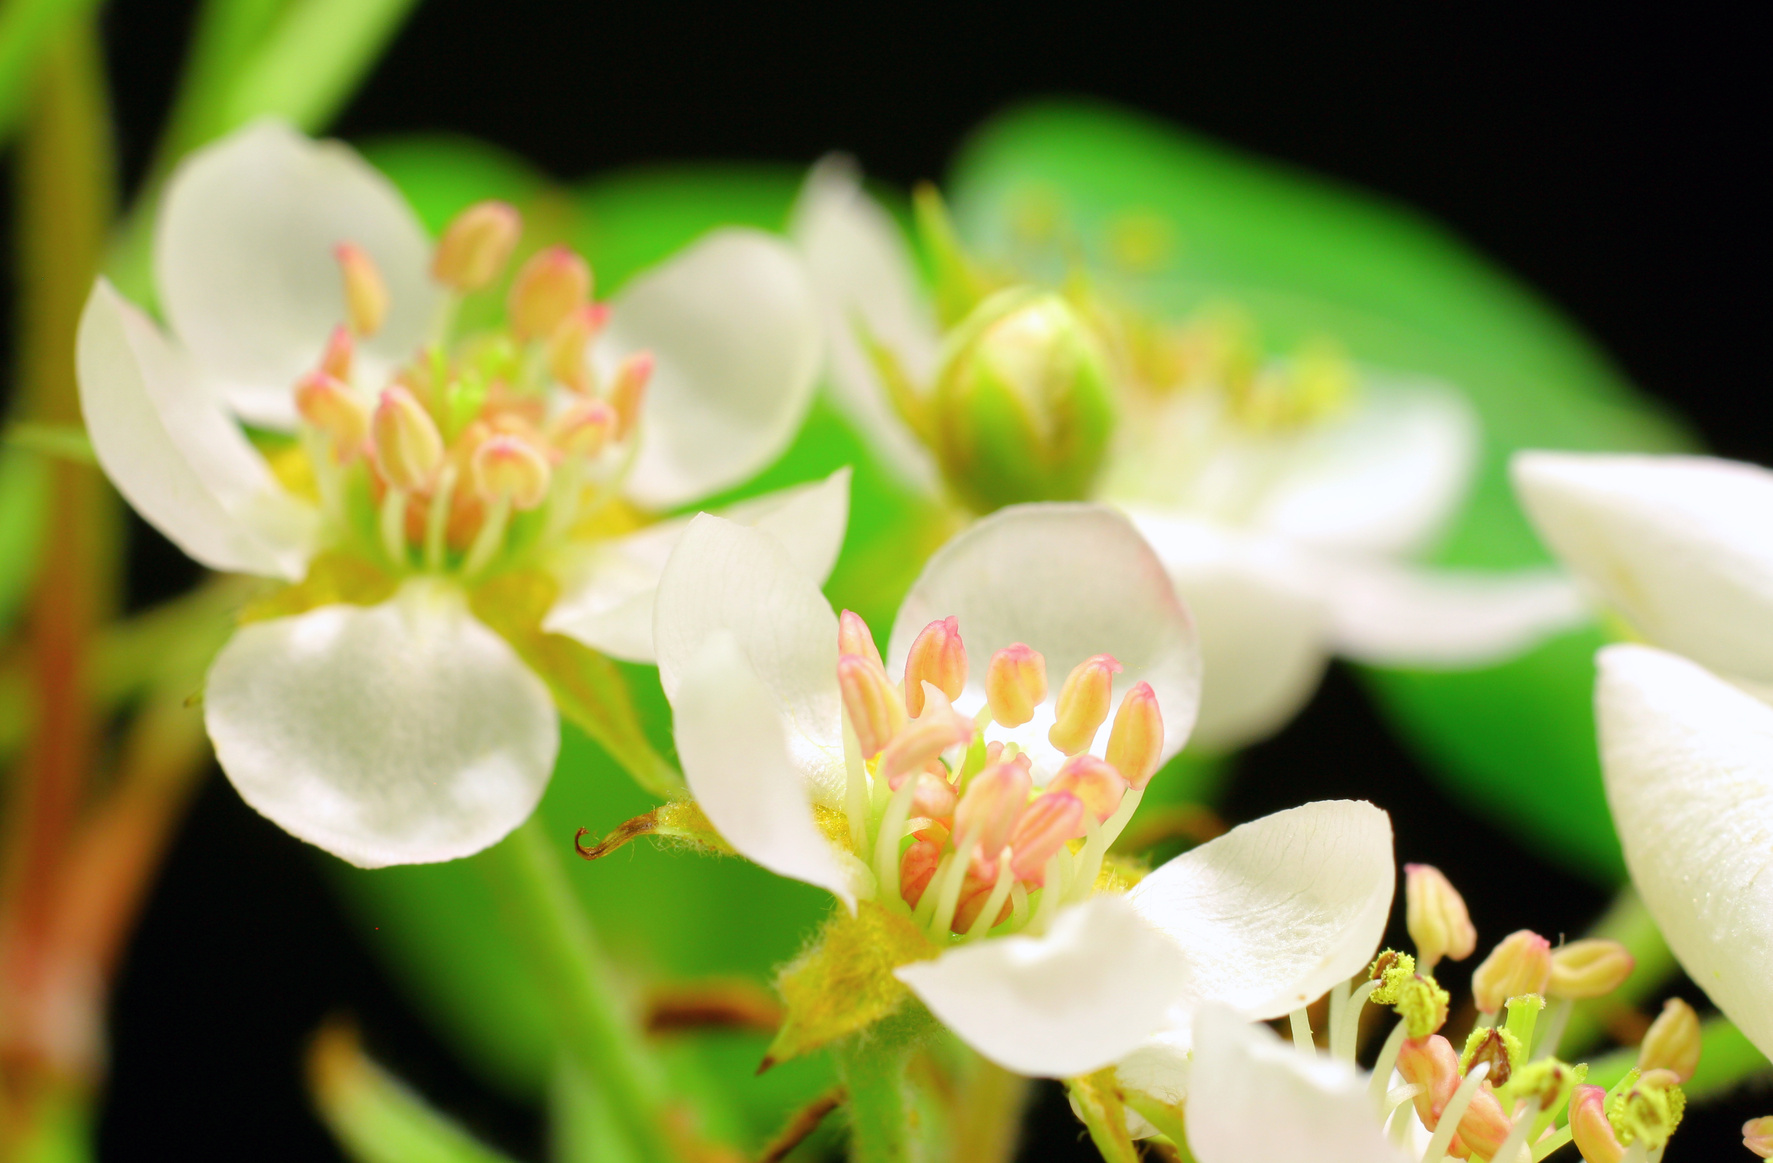 Pear treee flowers